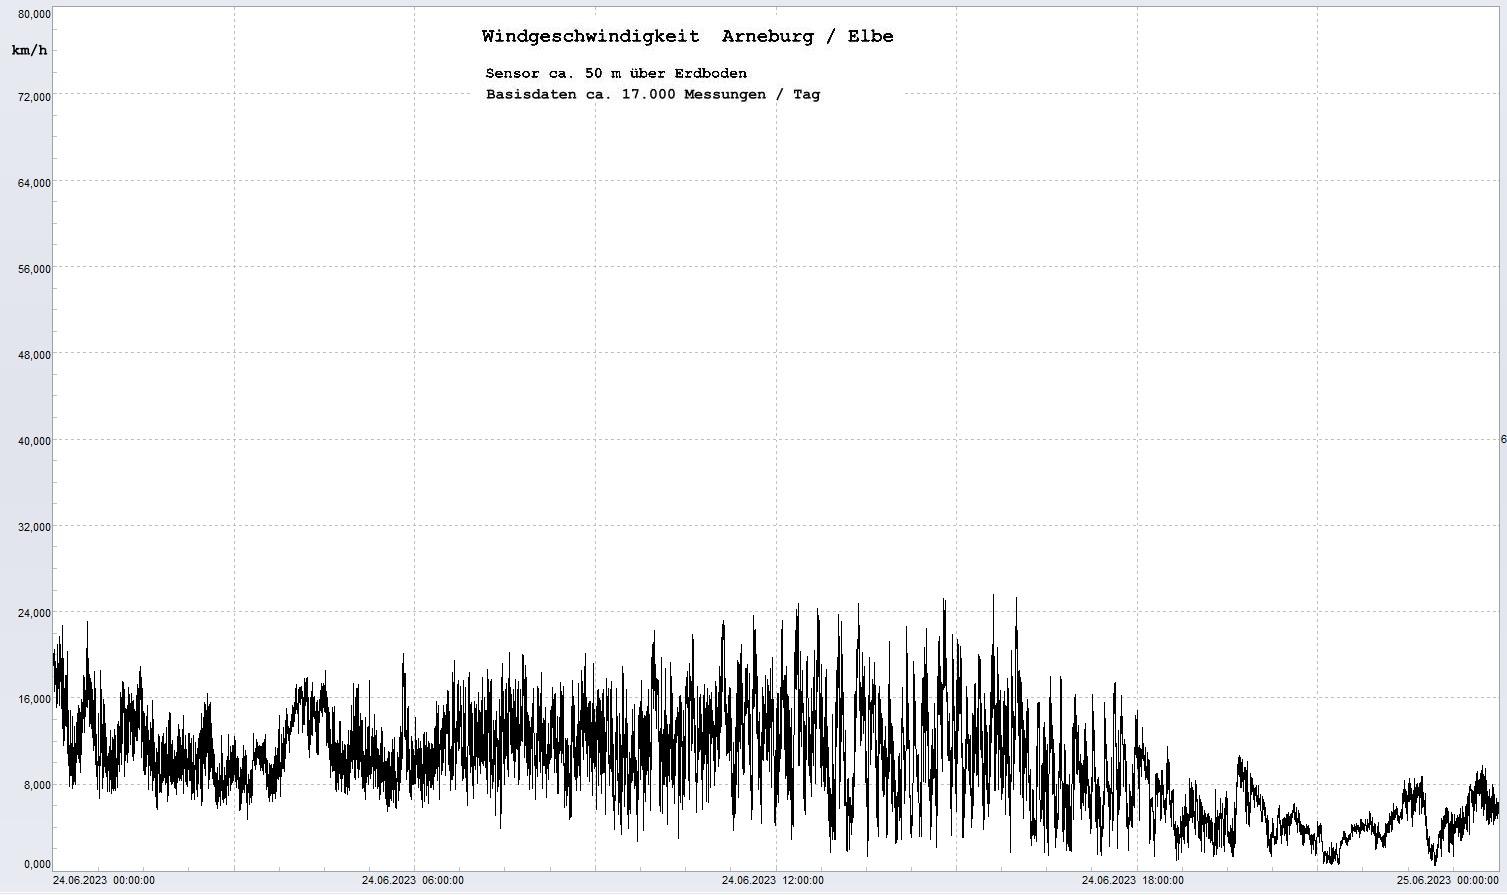 Arneburg Tages-Diagramm Winddaten, 24.06.2023
  Diagramm, Sensor auf Gebäude, ca. 50 m über Erdboden, Basis: 5s-Aufzeichnung